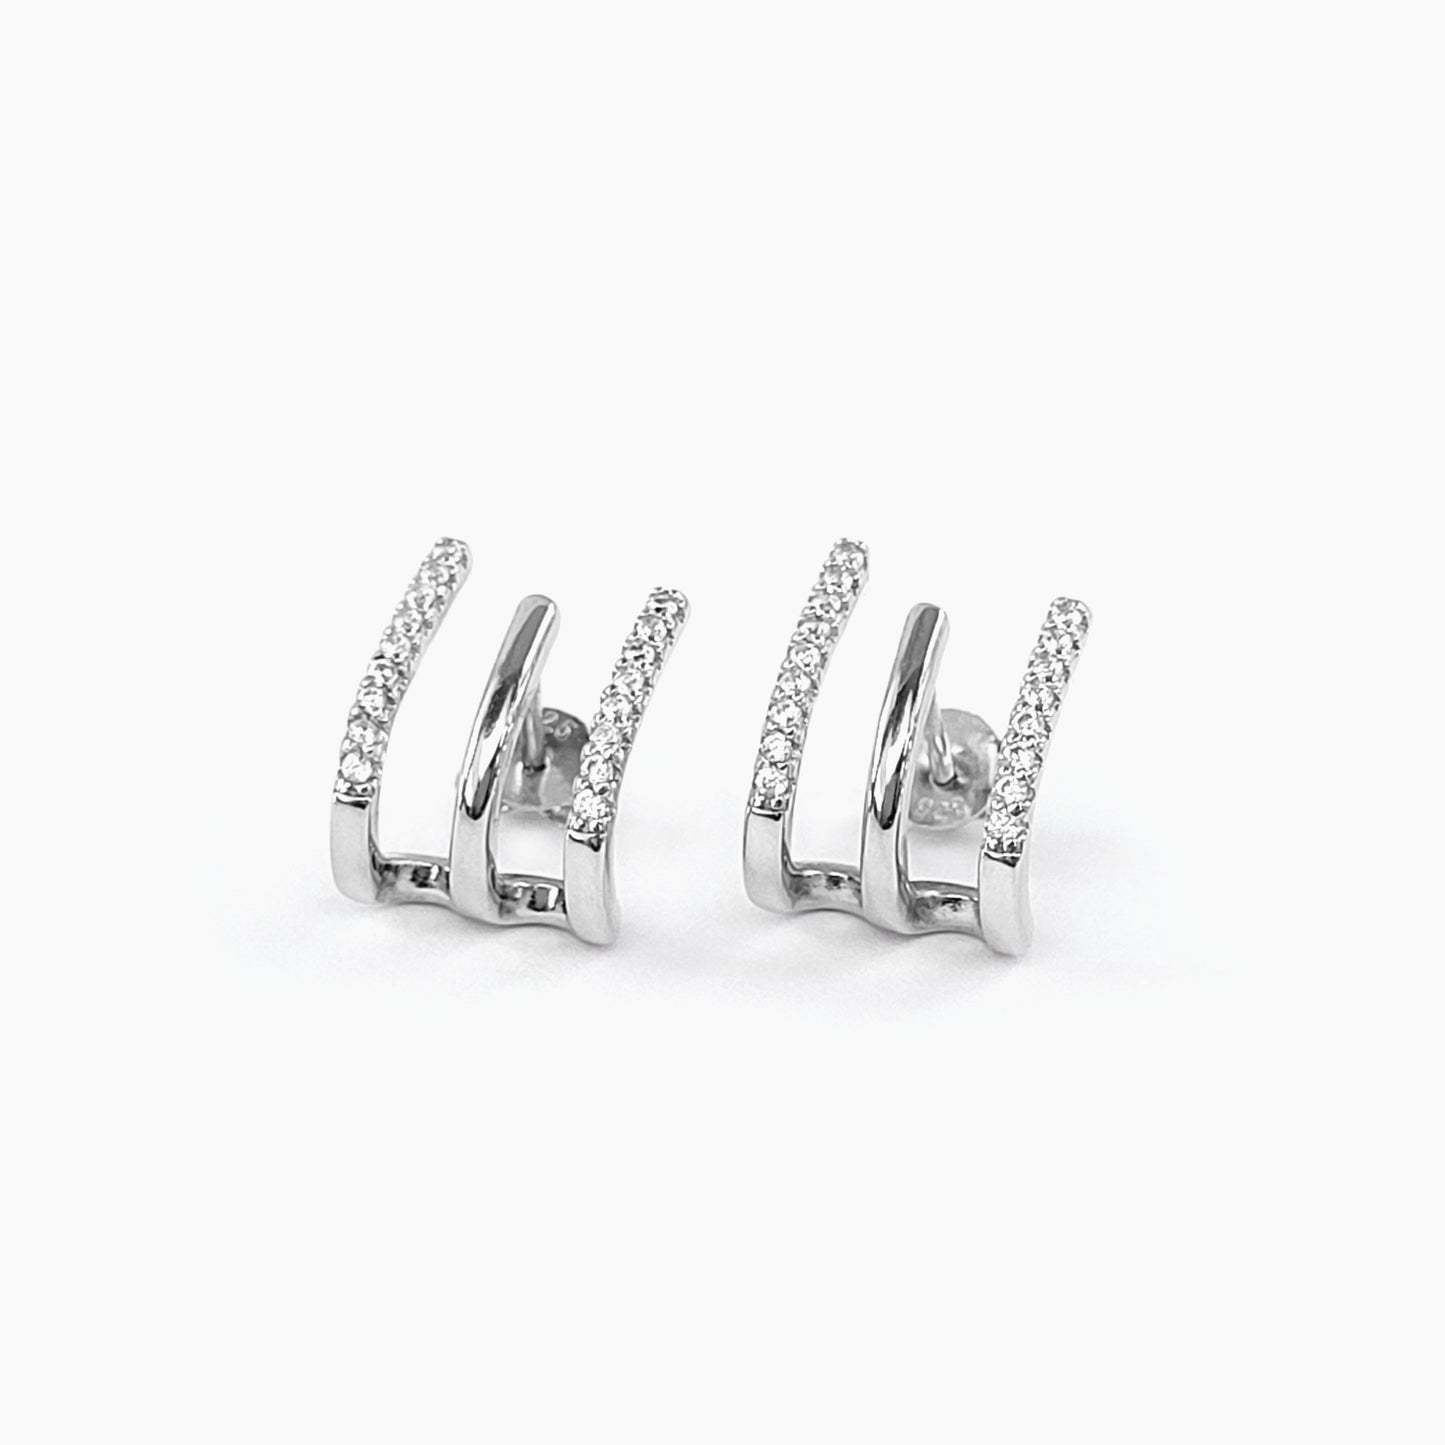 Triple-Row Earrings in Sterling Silver